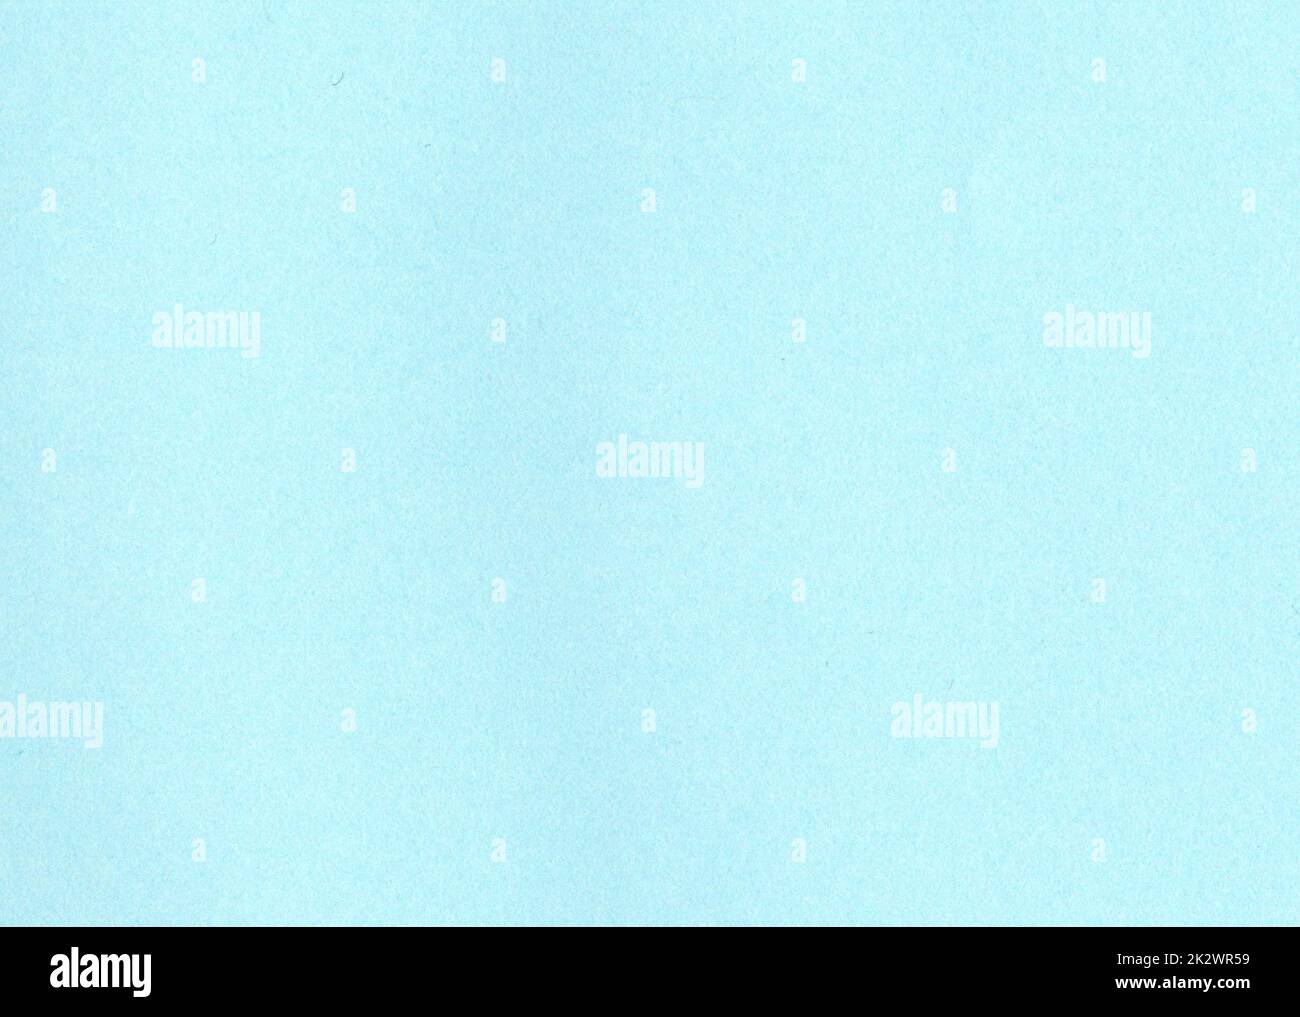 Hochauflösende Nahaufnahme großes Bild von Licht, Himmel, babyblau unbeschichteter Papierstruktur Hintergrund mit feinkörniger Faser und Staubpartikeln glatte, matte Tapete mit Platz zum Kopieren von Text Stockfoto